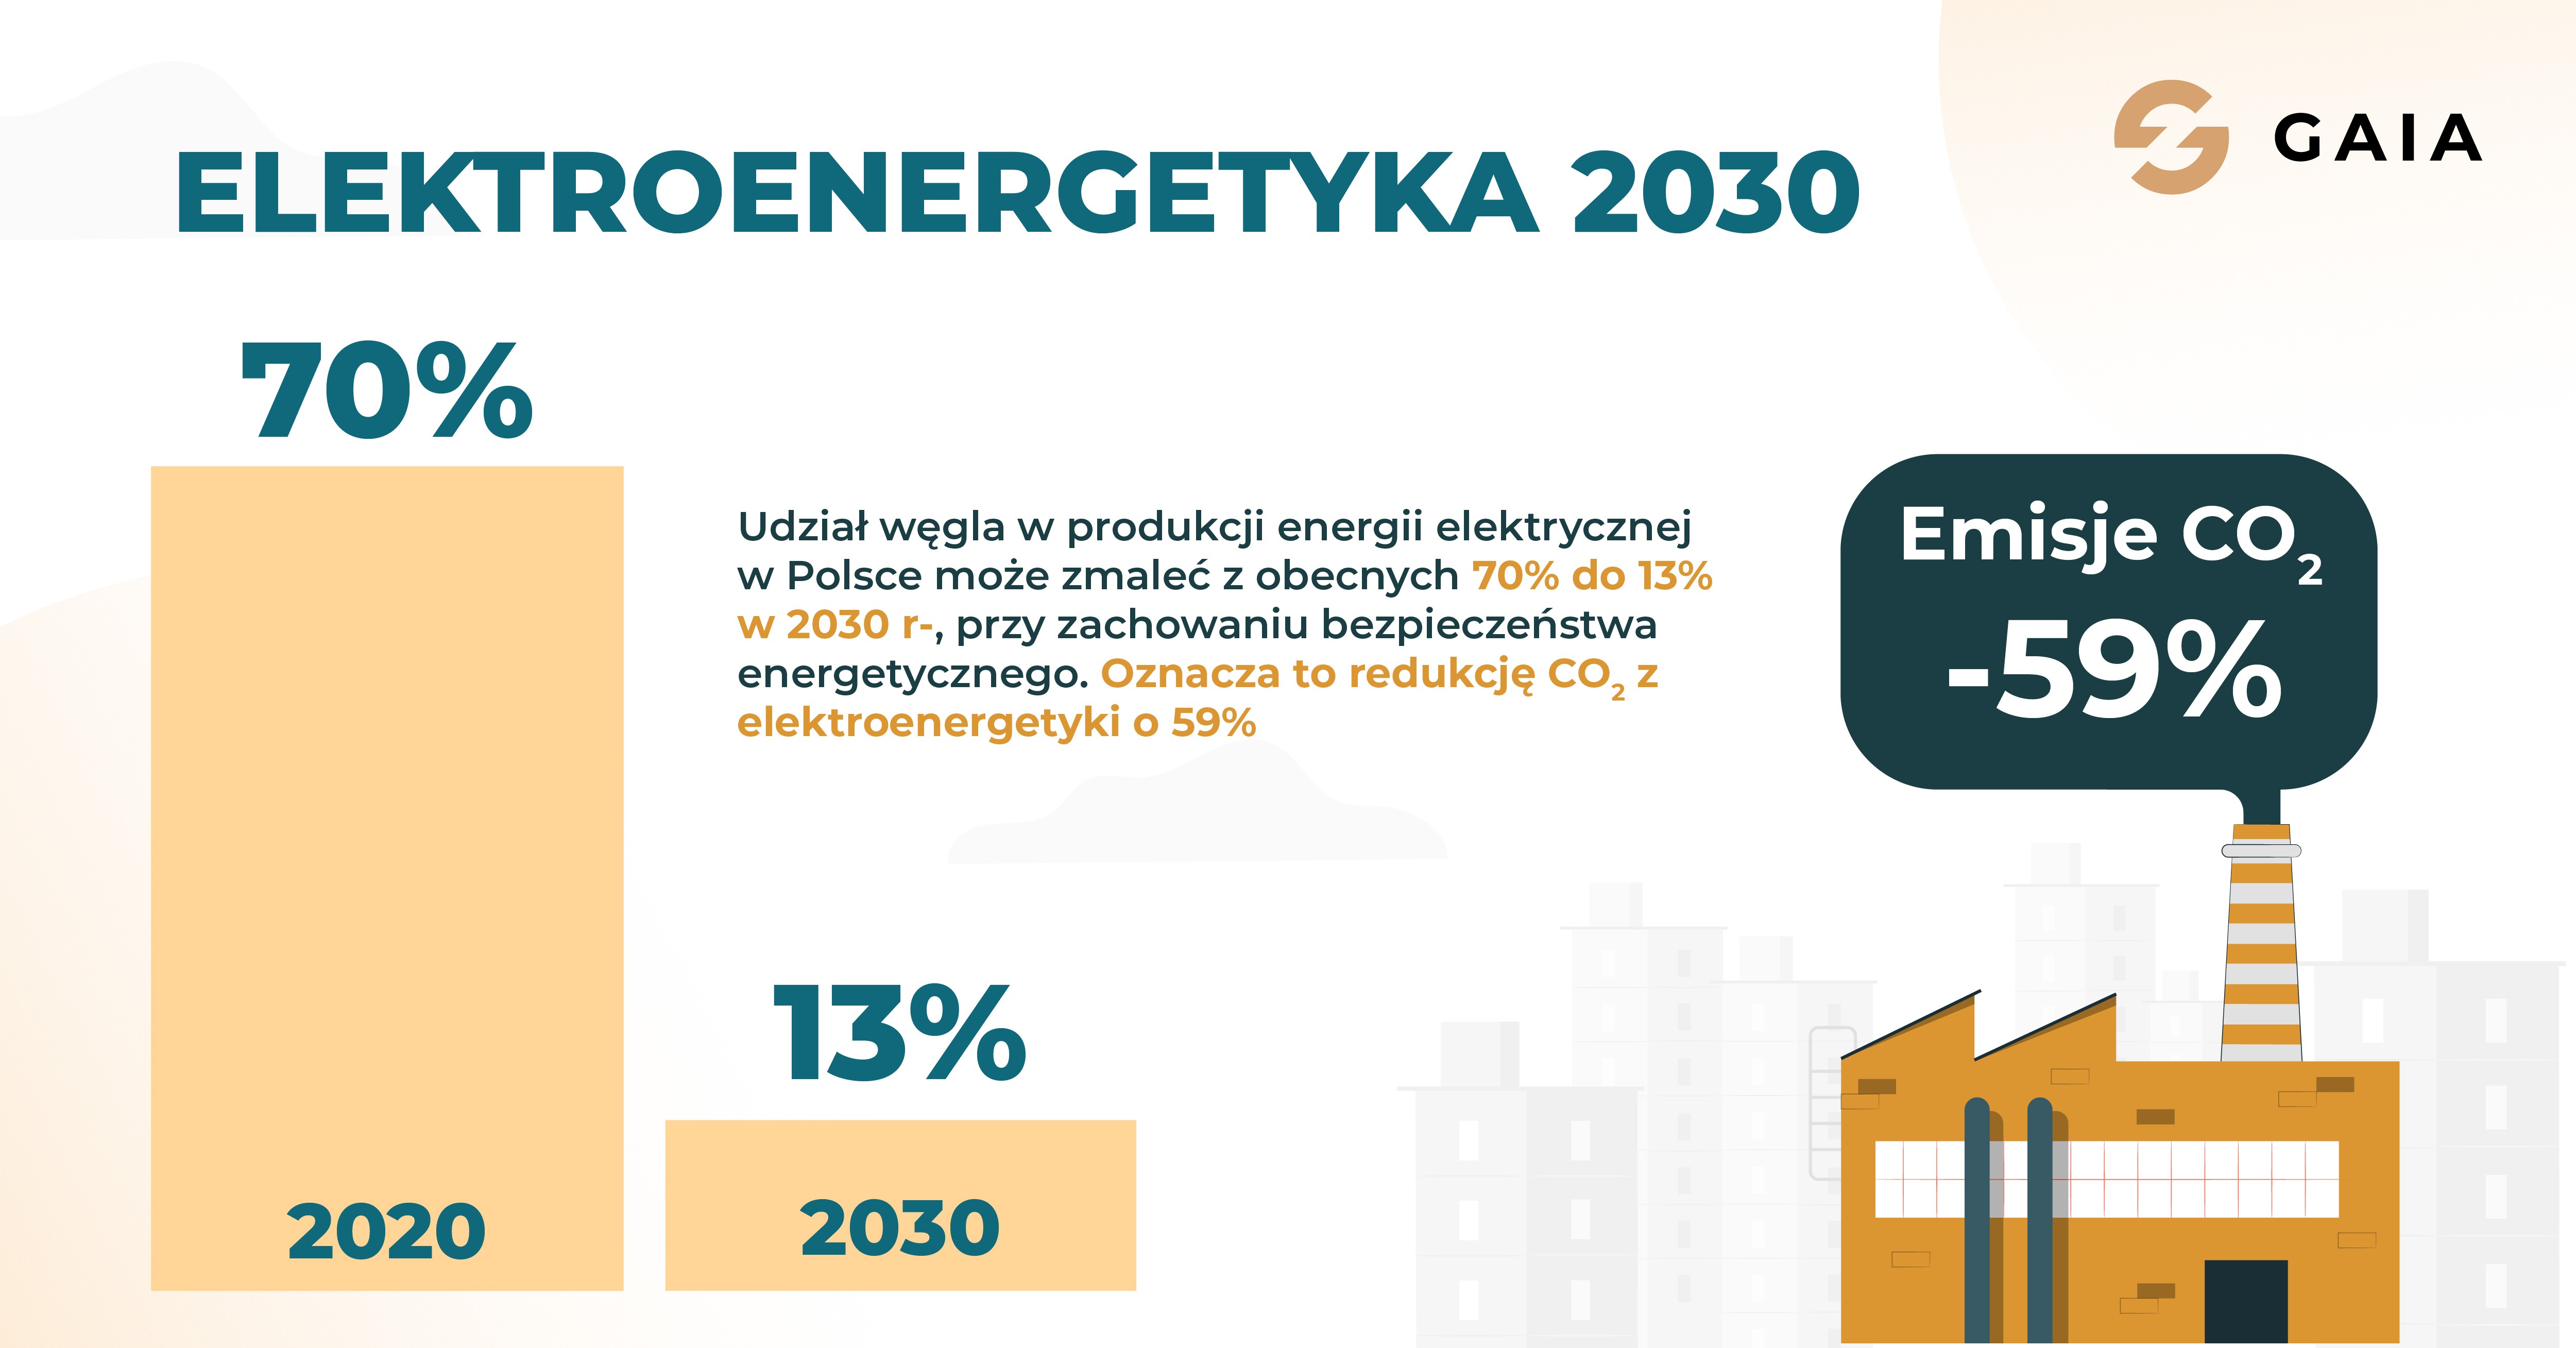 Elektroenergetyka 2030 